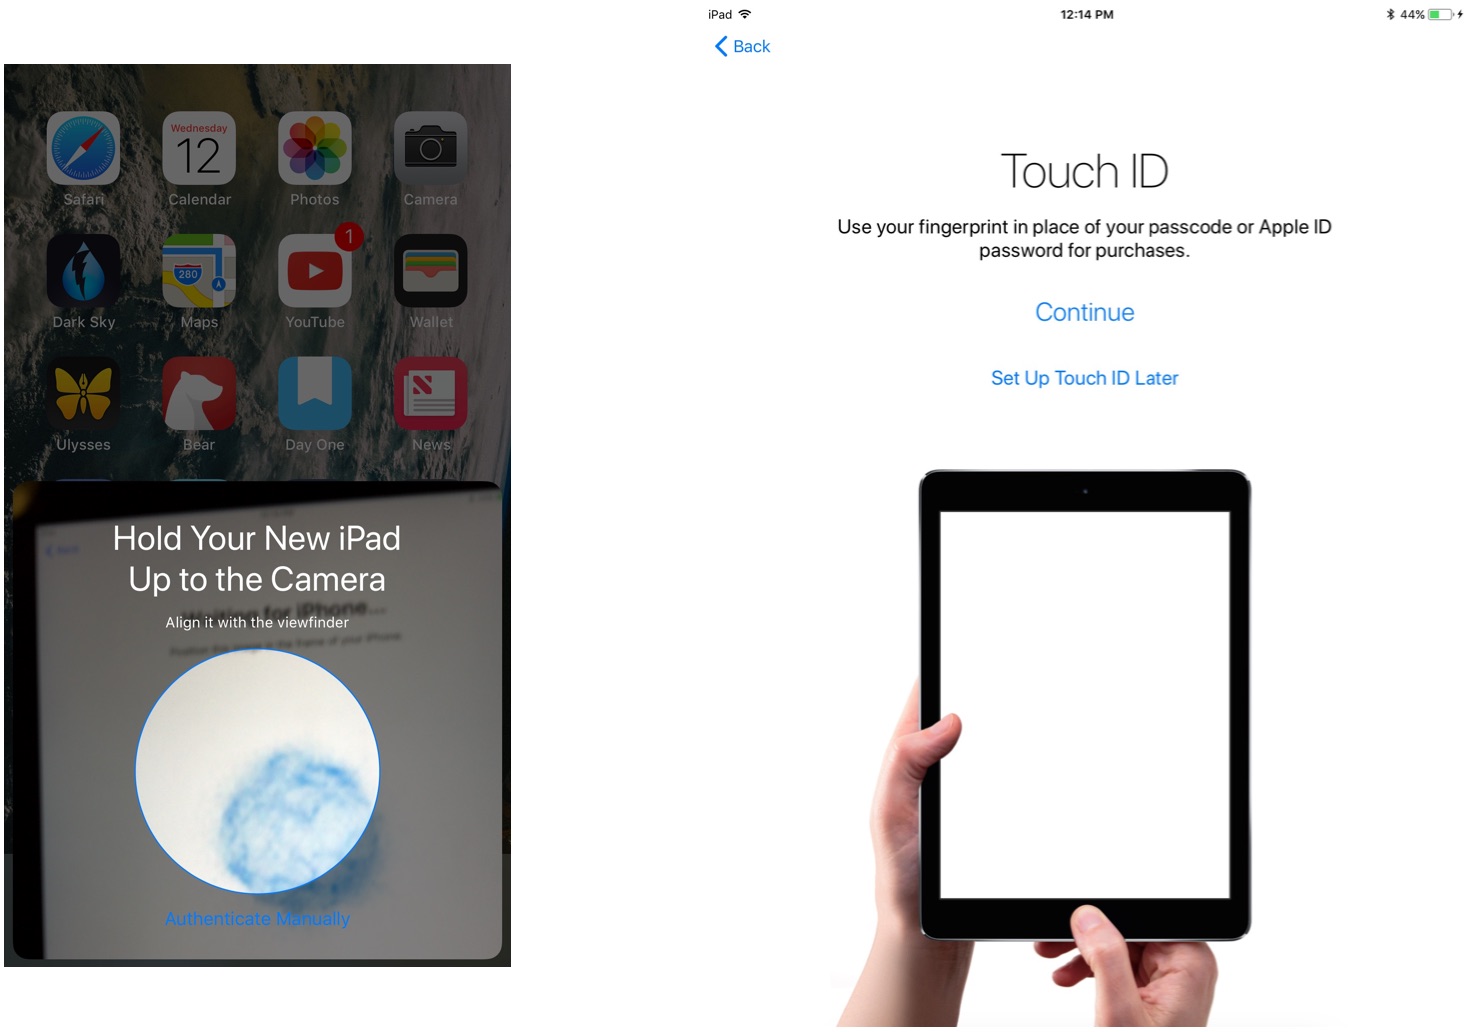 Используйте автоматическую настройку для передачи данных на новый iPad, показывая шаги: отсканируйте изображение, введите пароль, настройте Touch ID.